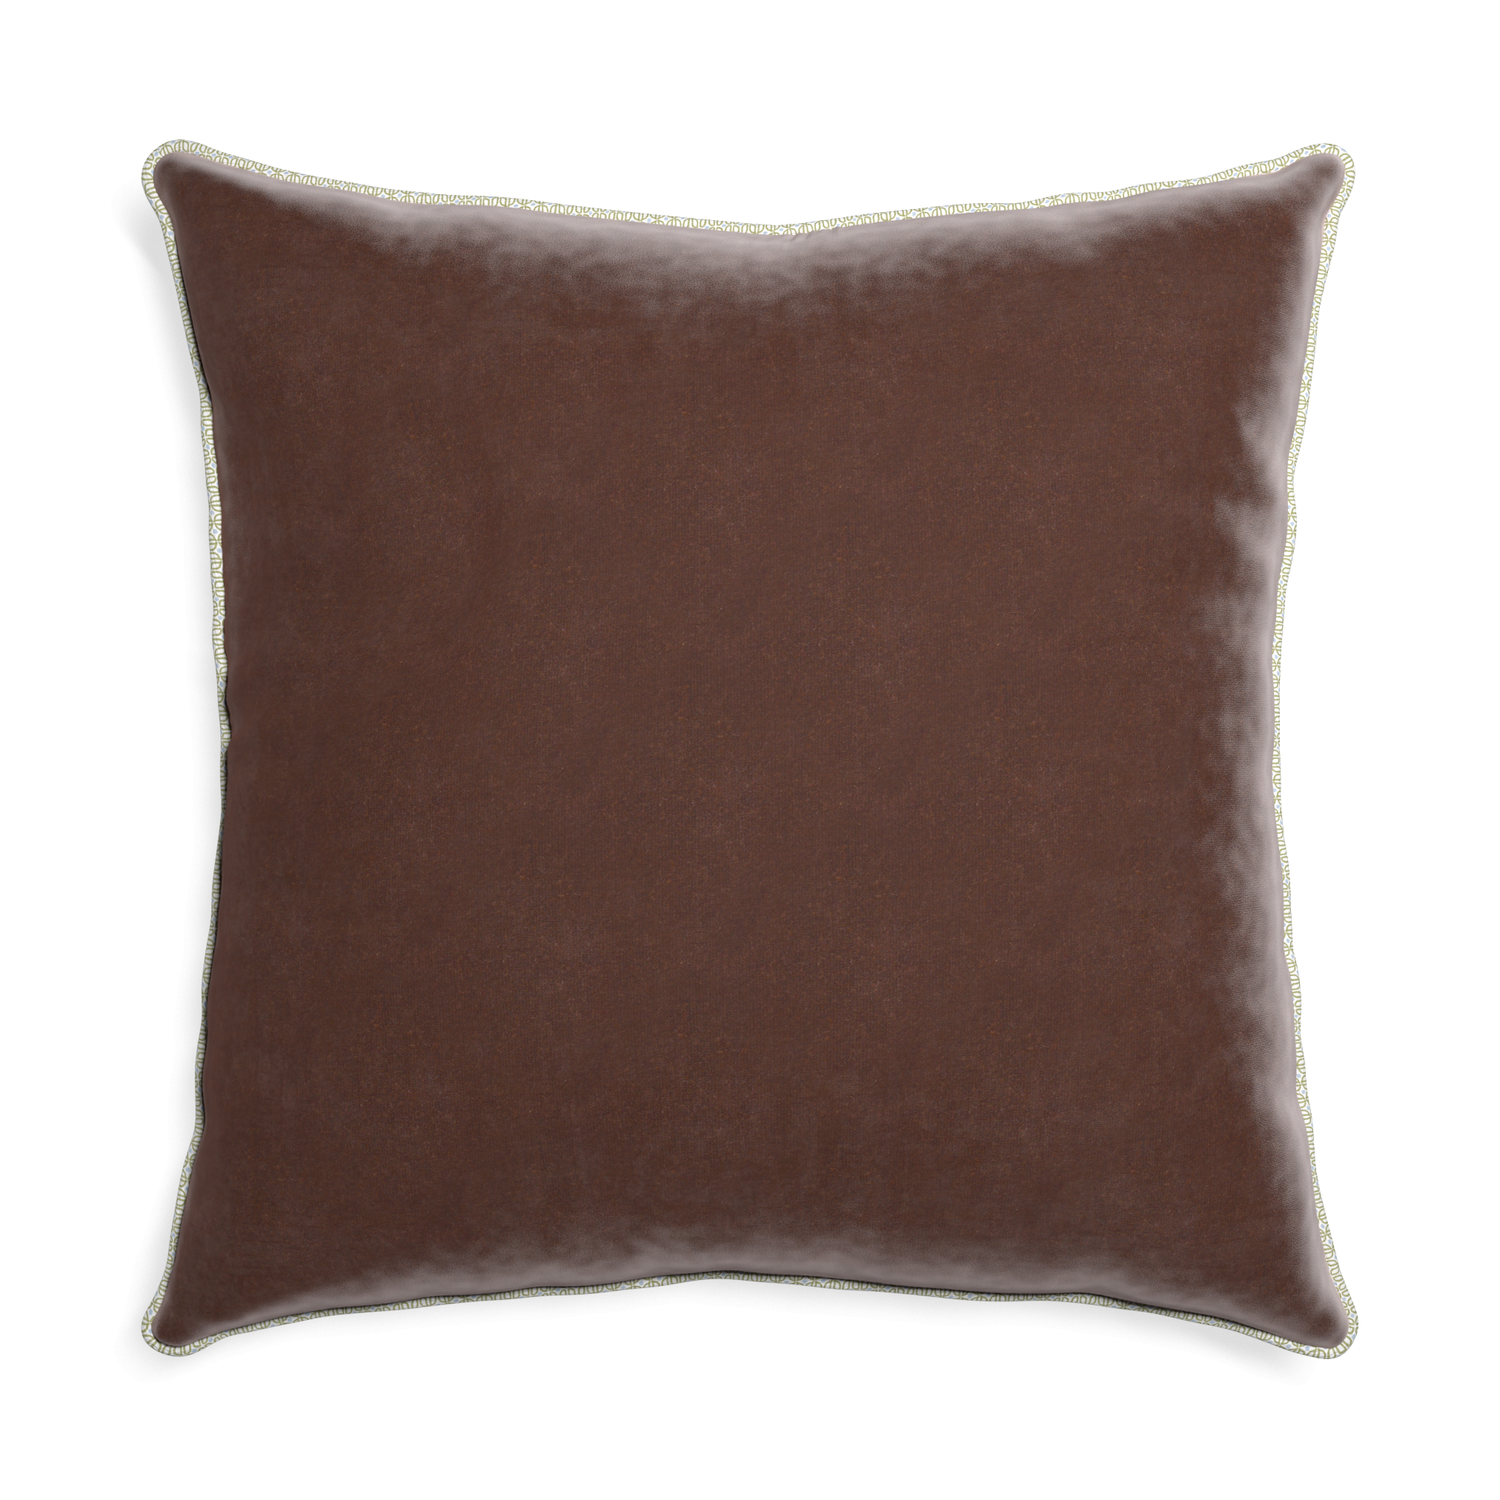 Euro-sham walnut velvet custom pillow with l piping on white background